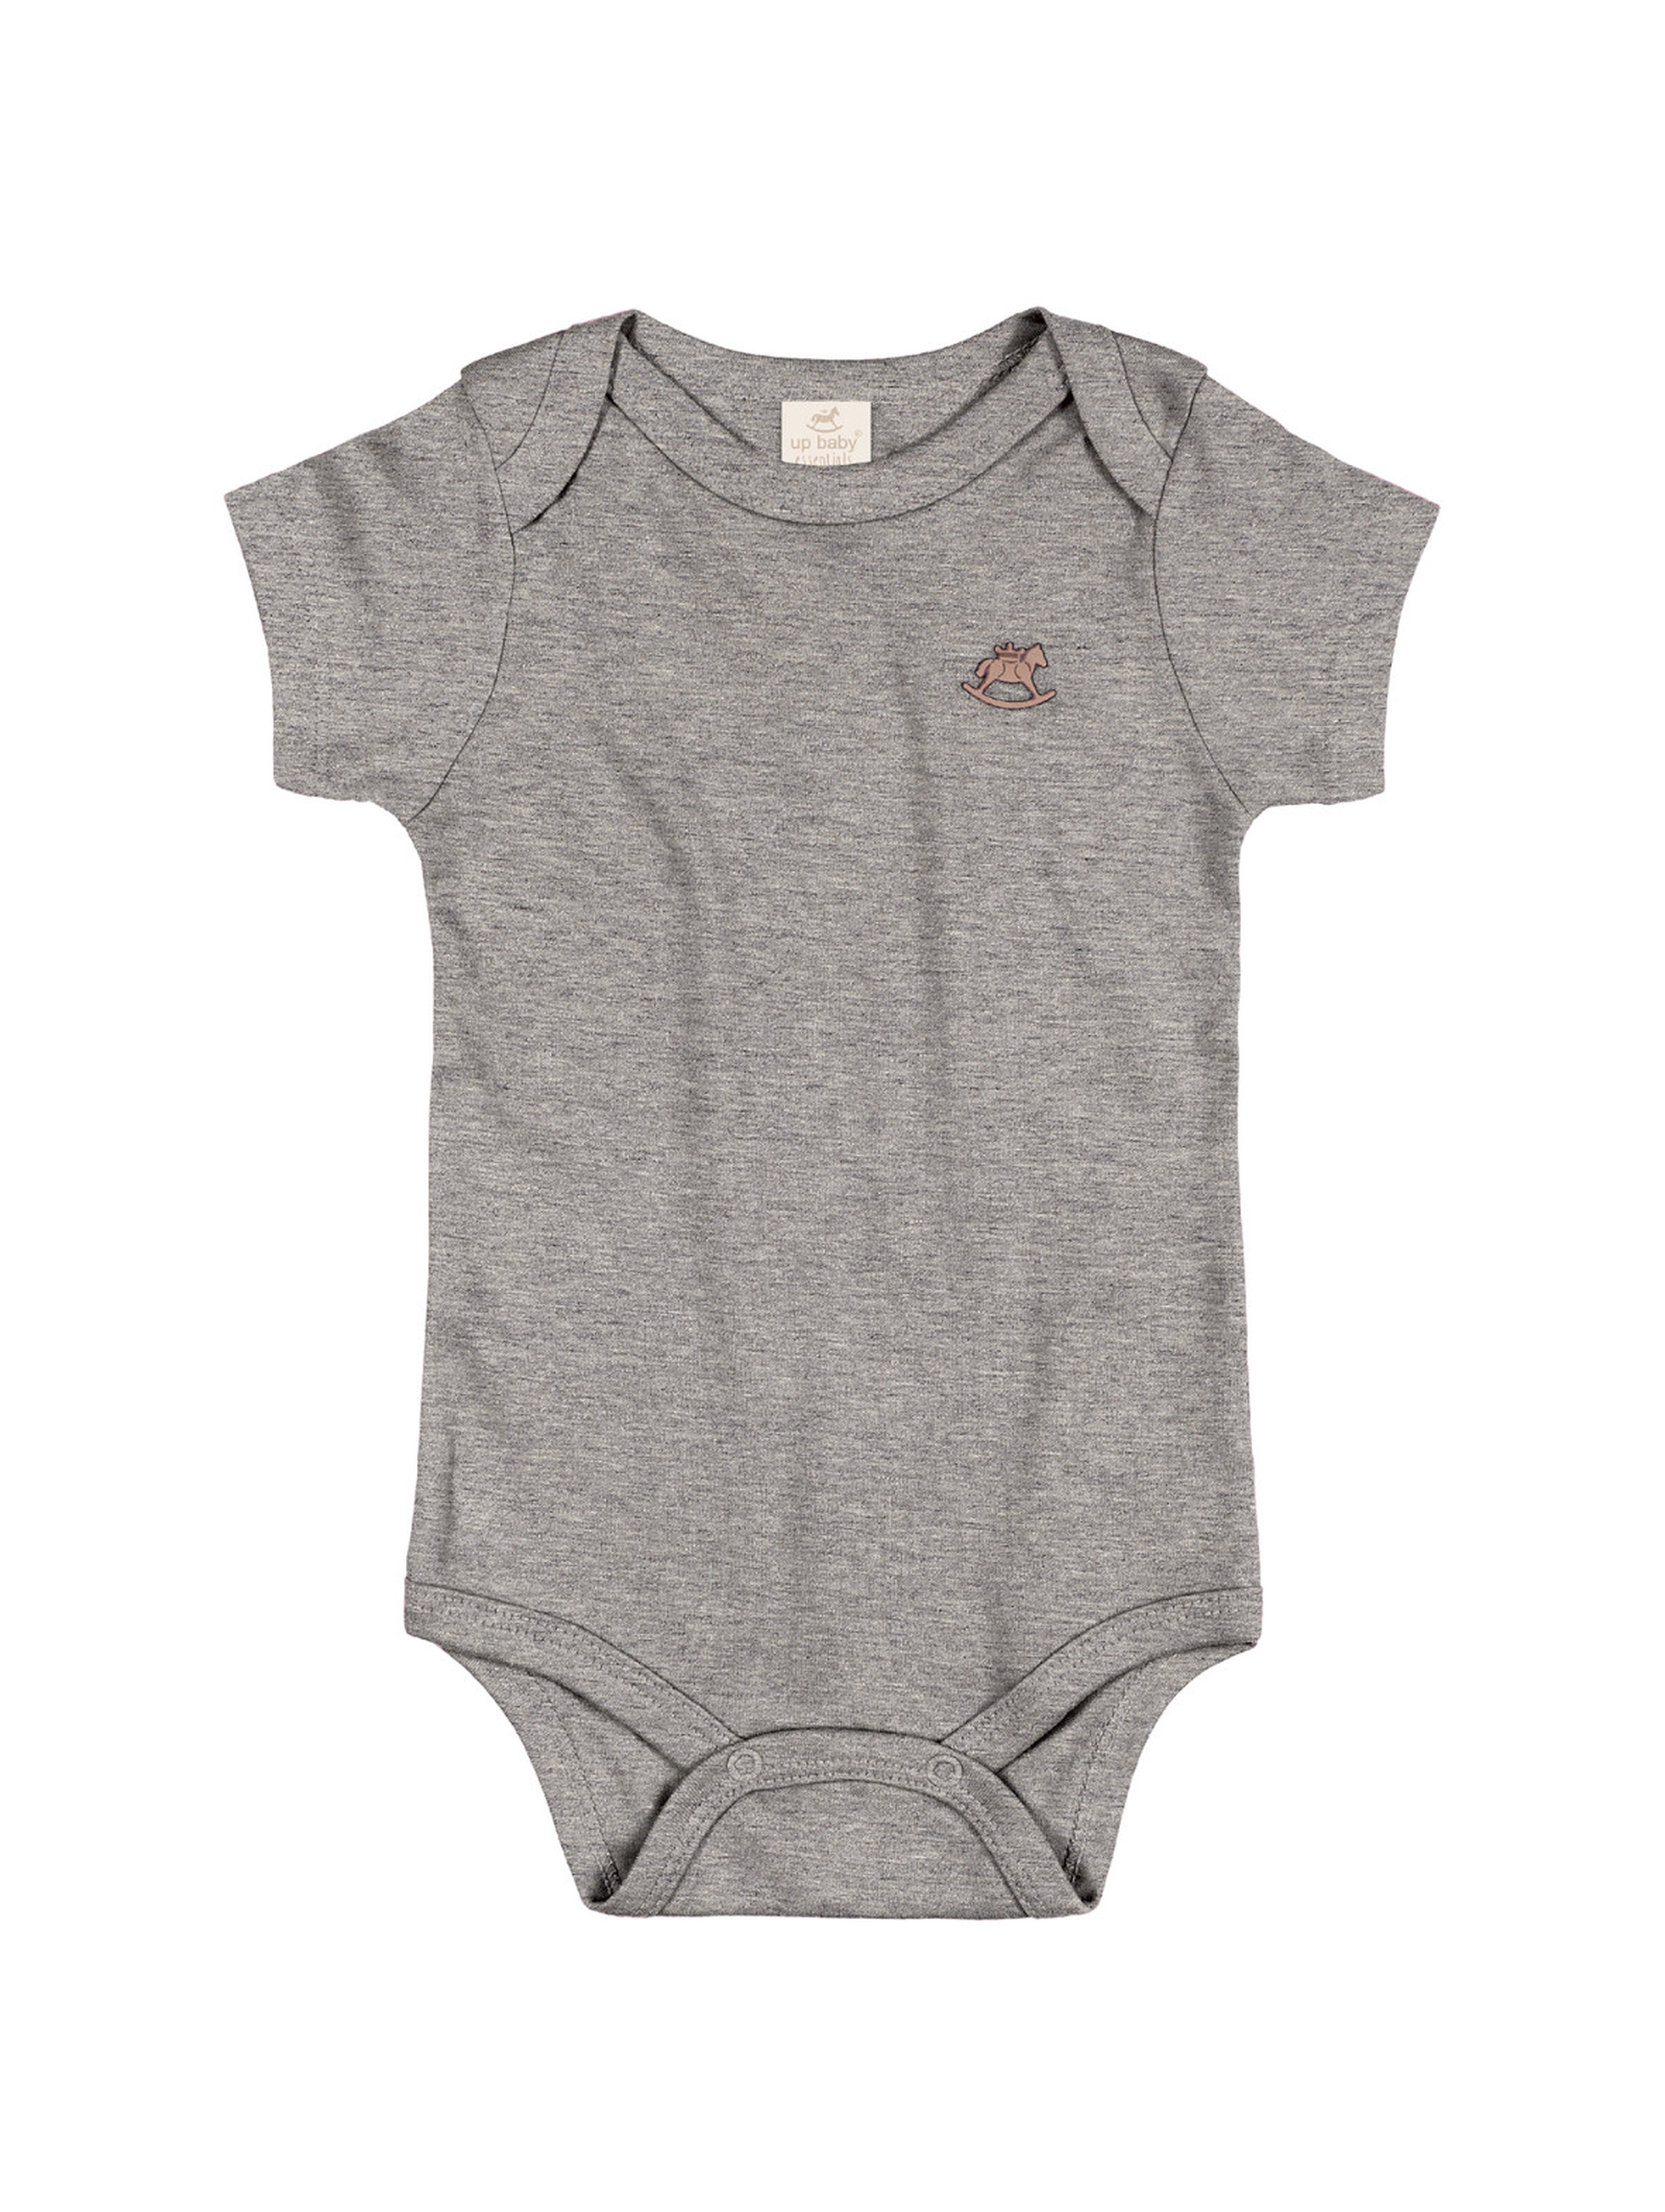 Gładkie bawełniane body dla niemowlaka - szare